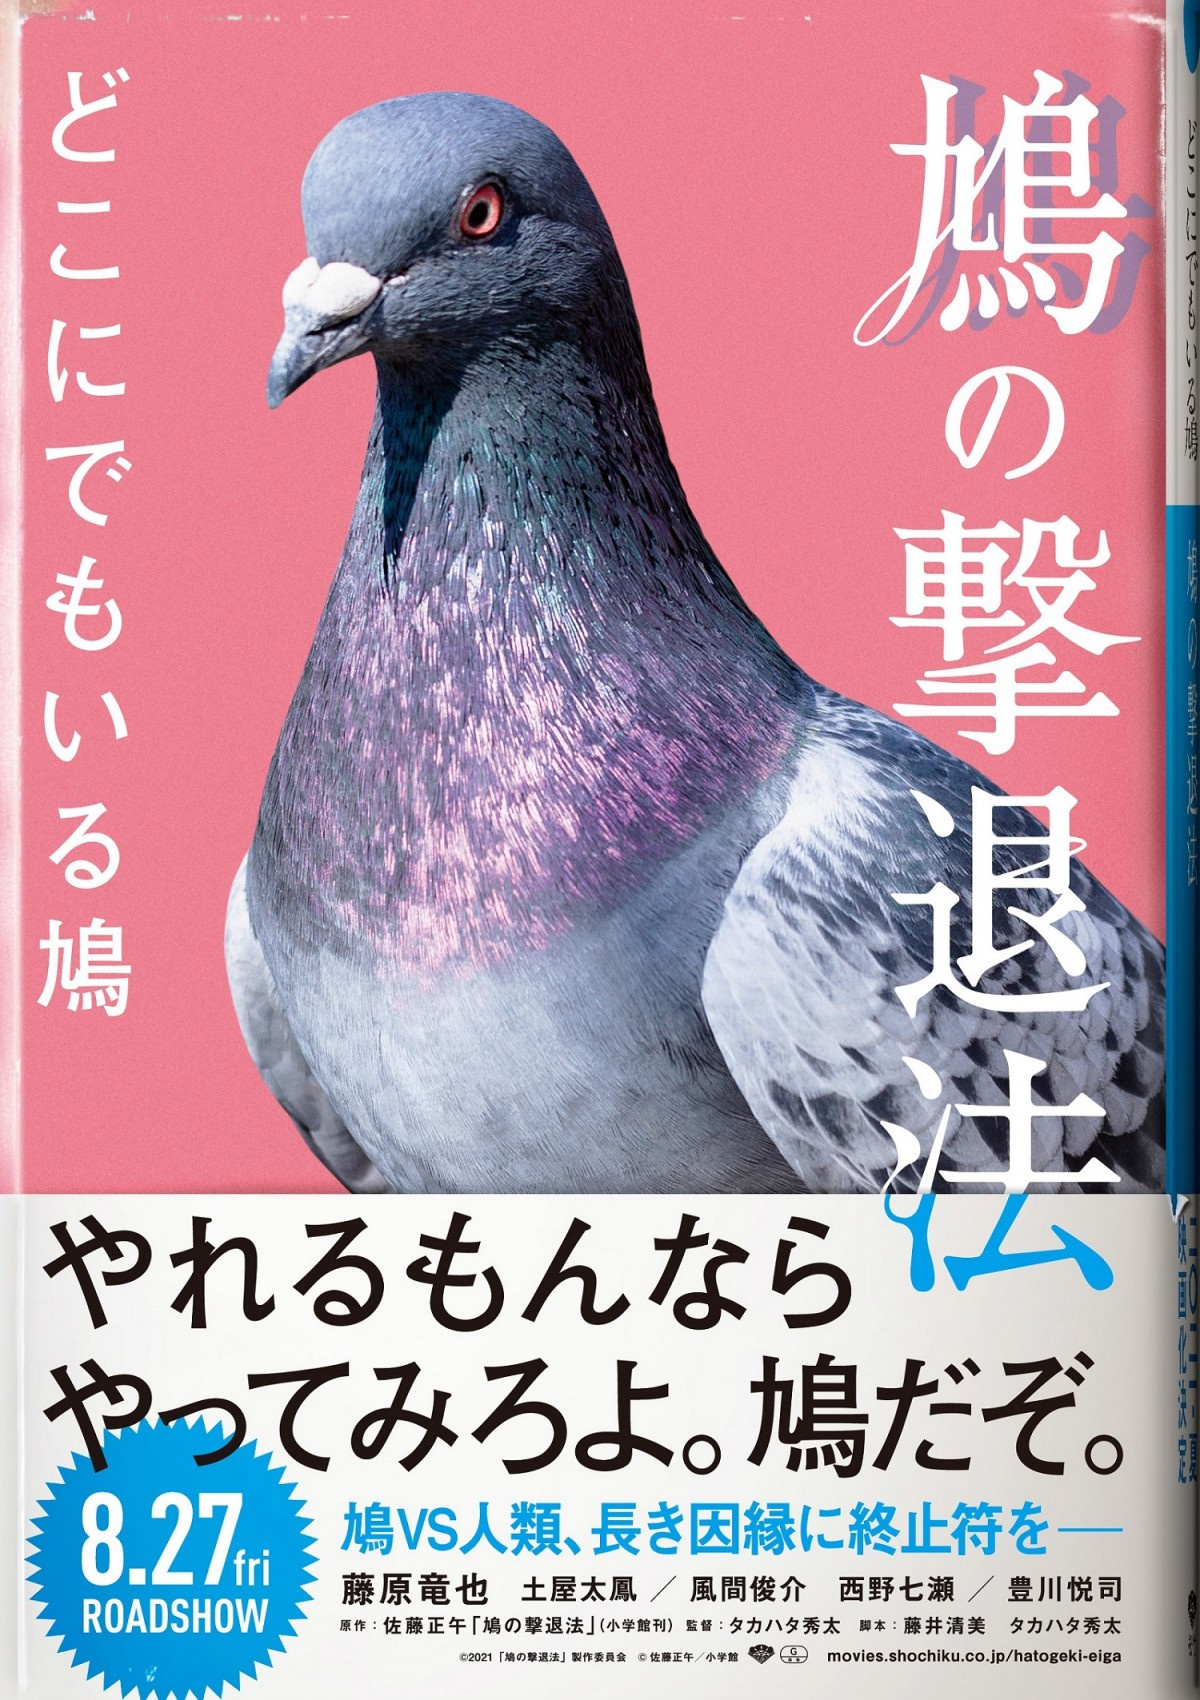 藤原竜也 主役の座を鳩に奪われた エイプリルフール限定フェイクビジュアル Oricon News